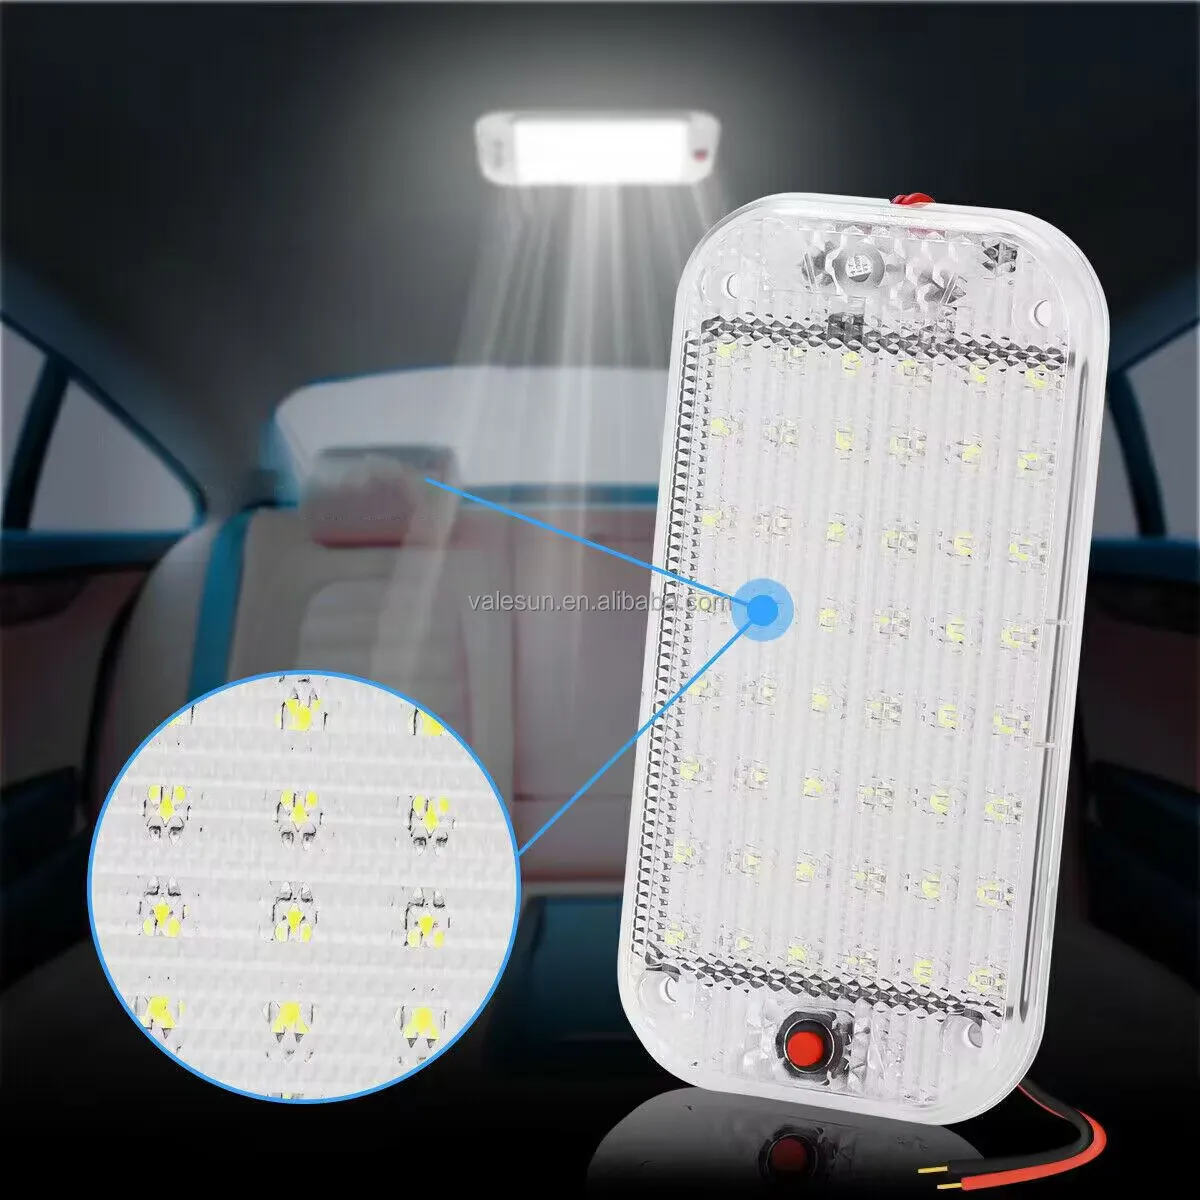 Lampu Panel LED Kecerahan Tinggi Lampu Baca Interior Mobil dengan Sakelar Lampu Sorot Truk Lampu Baca Mobil untuk Truk SUV